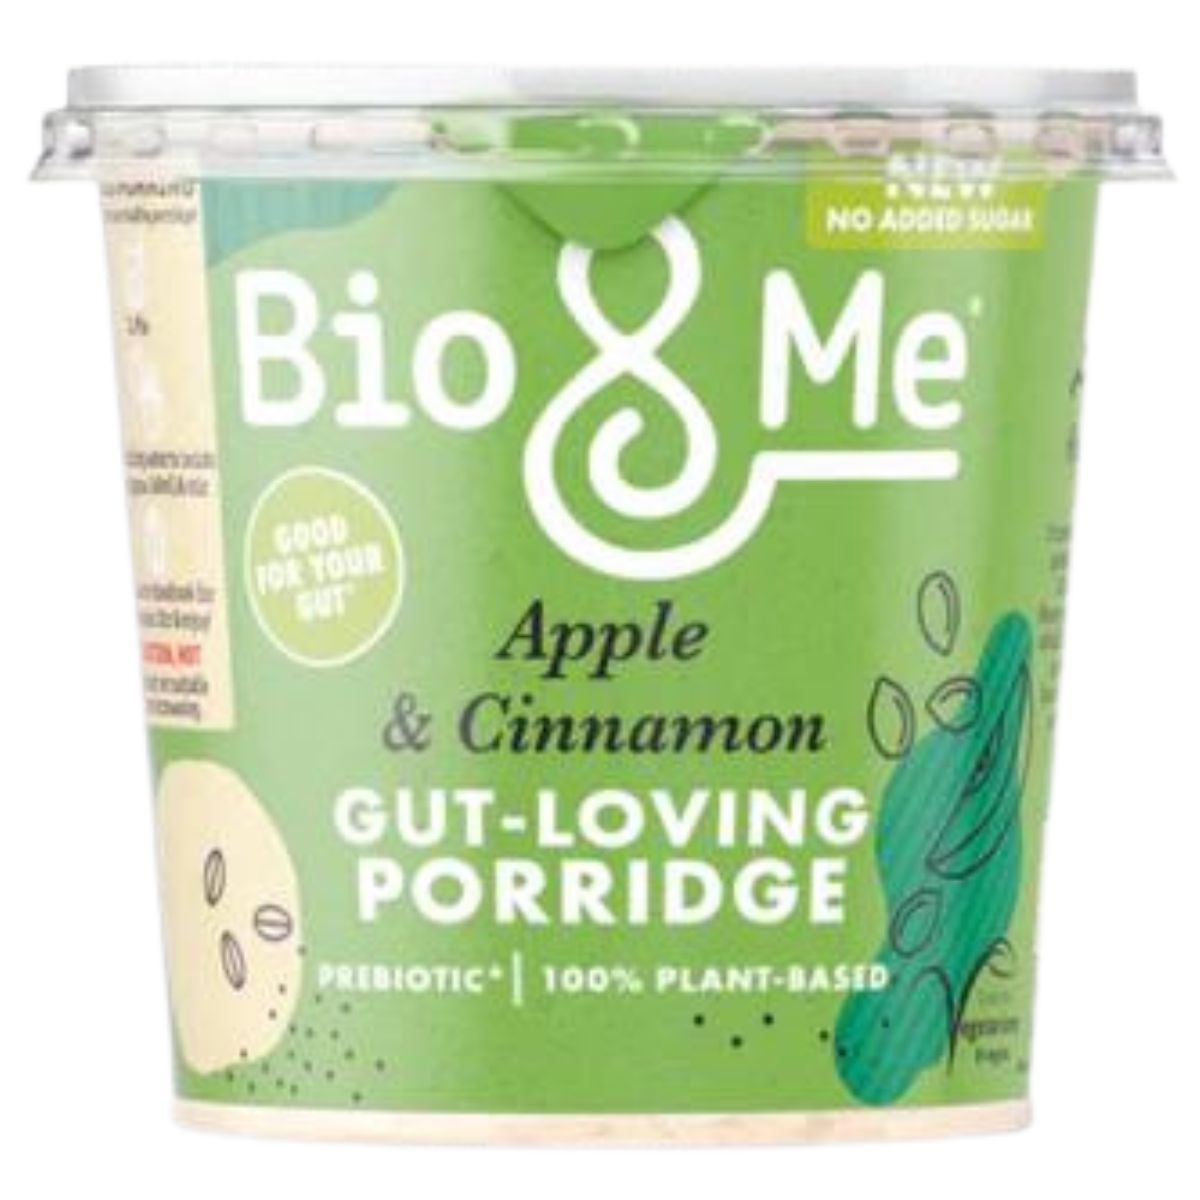 Bio & Me Apple & Cinnamon Porridge Pot - 58g